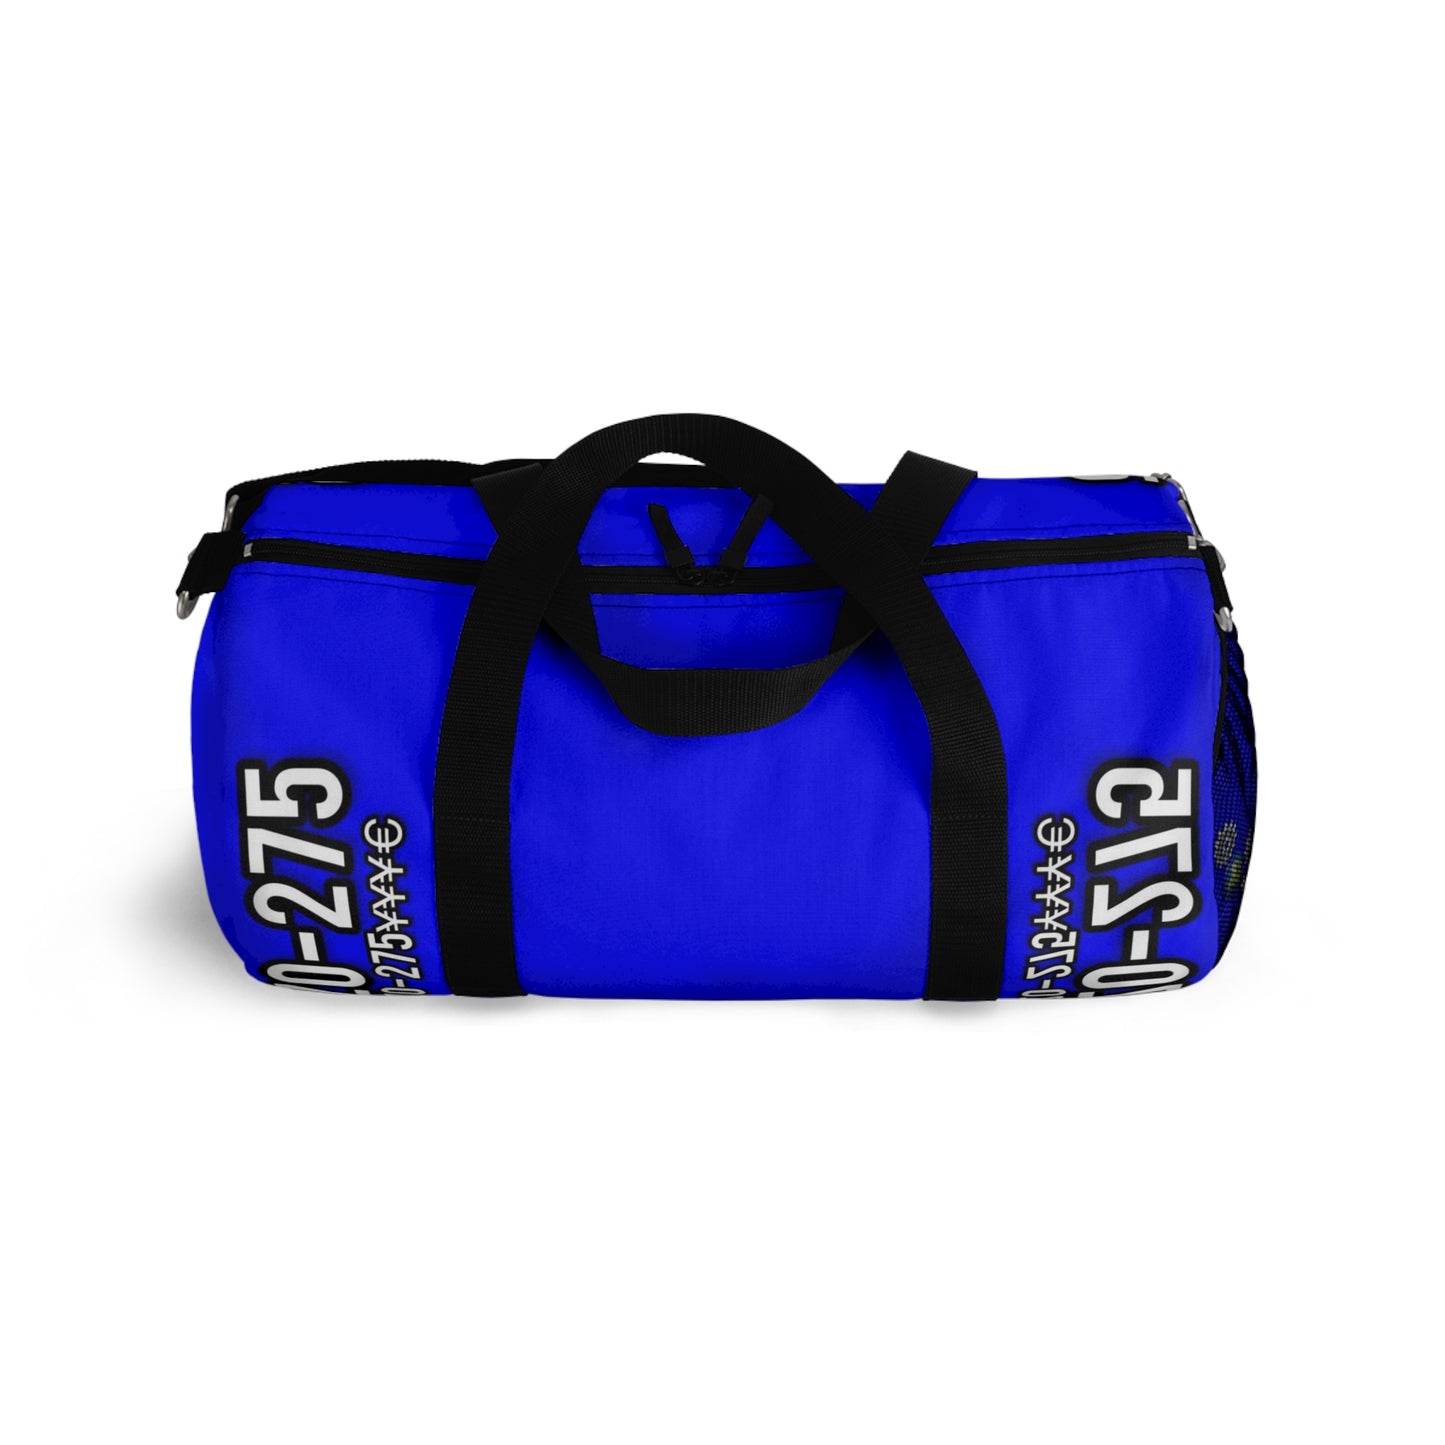 HZO- 779 Duffel Bag